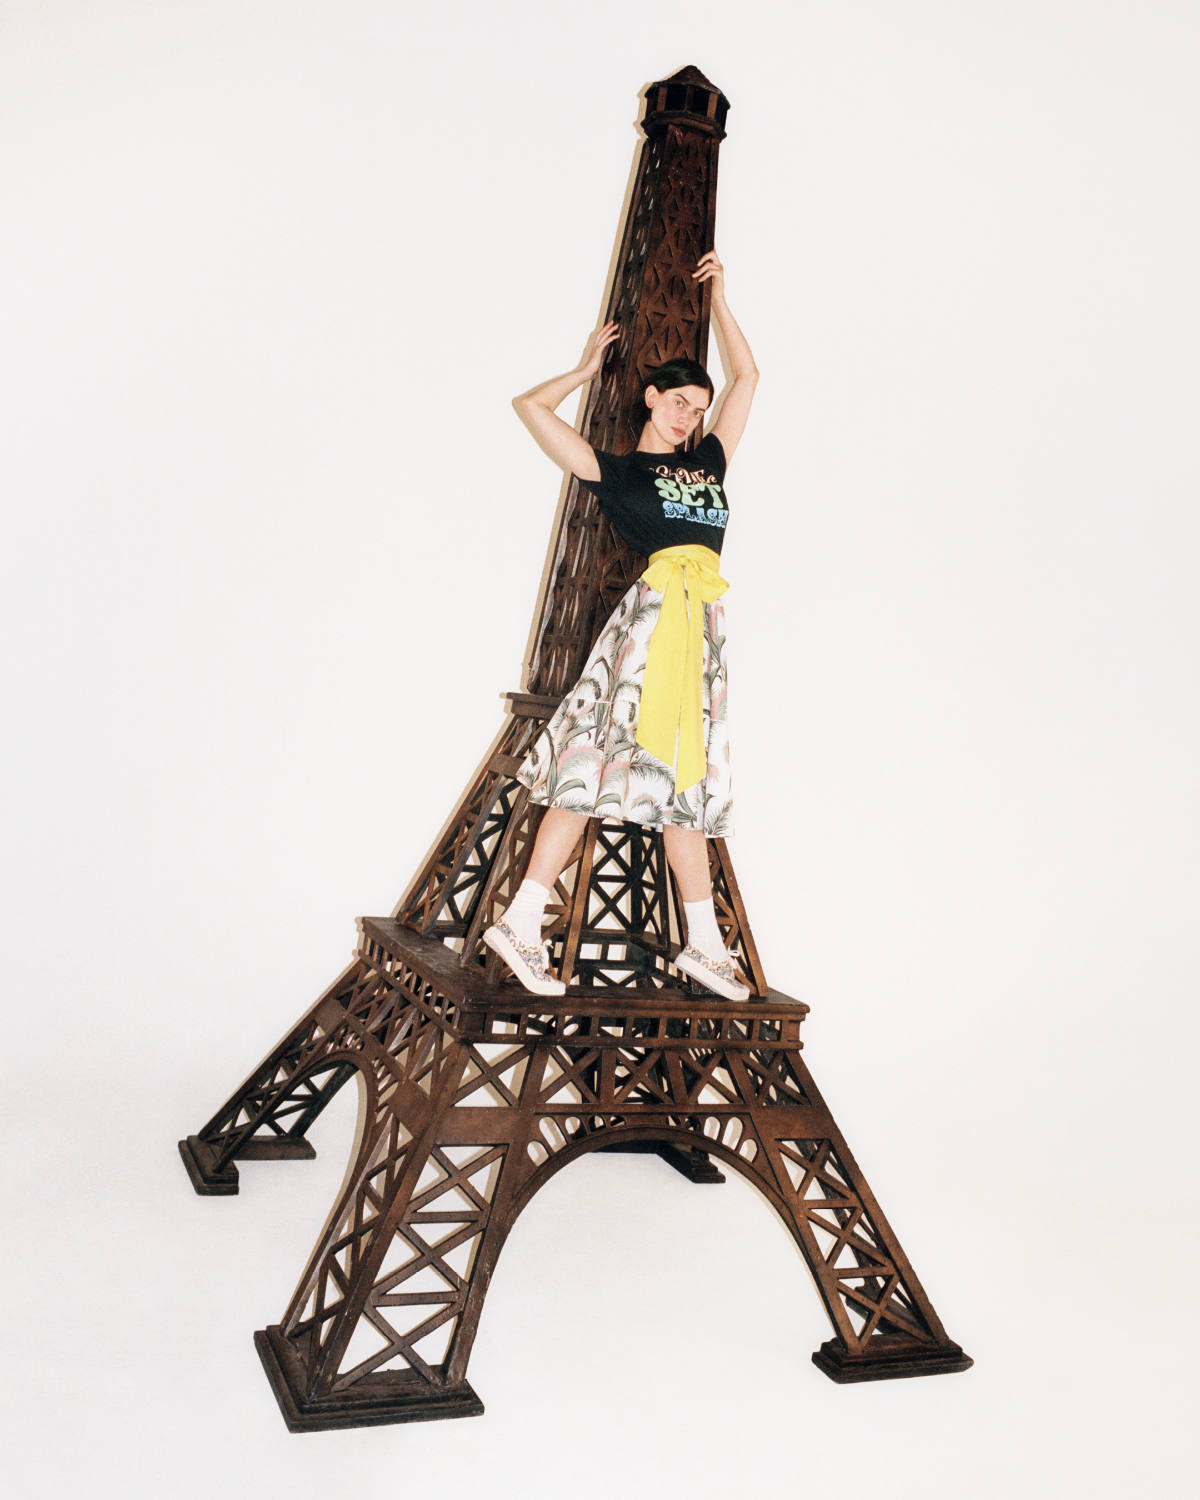 Maison Kitsuné Presents Third Part Of Its Spring-Summer 2023 Campaign: Destination Paris